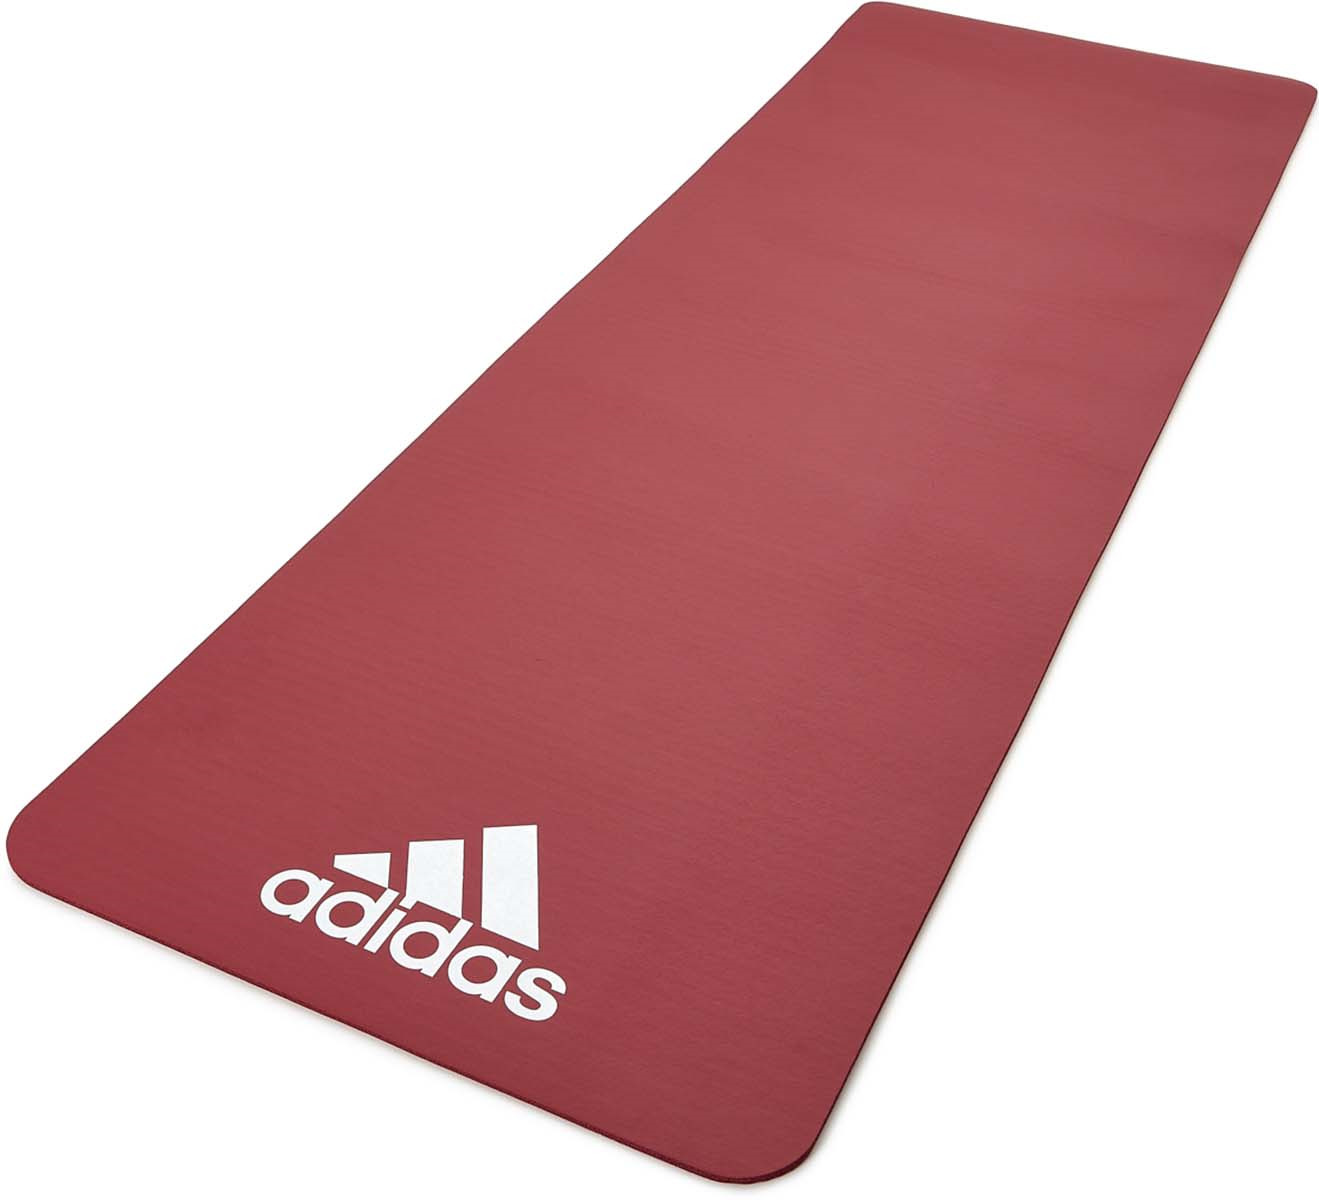 Коврик тренировочный для фитнеса Adidas, цвет: красный, толщина 7 мм, длина 173 см